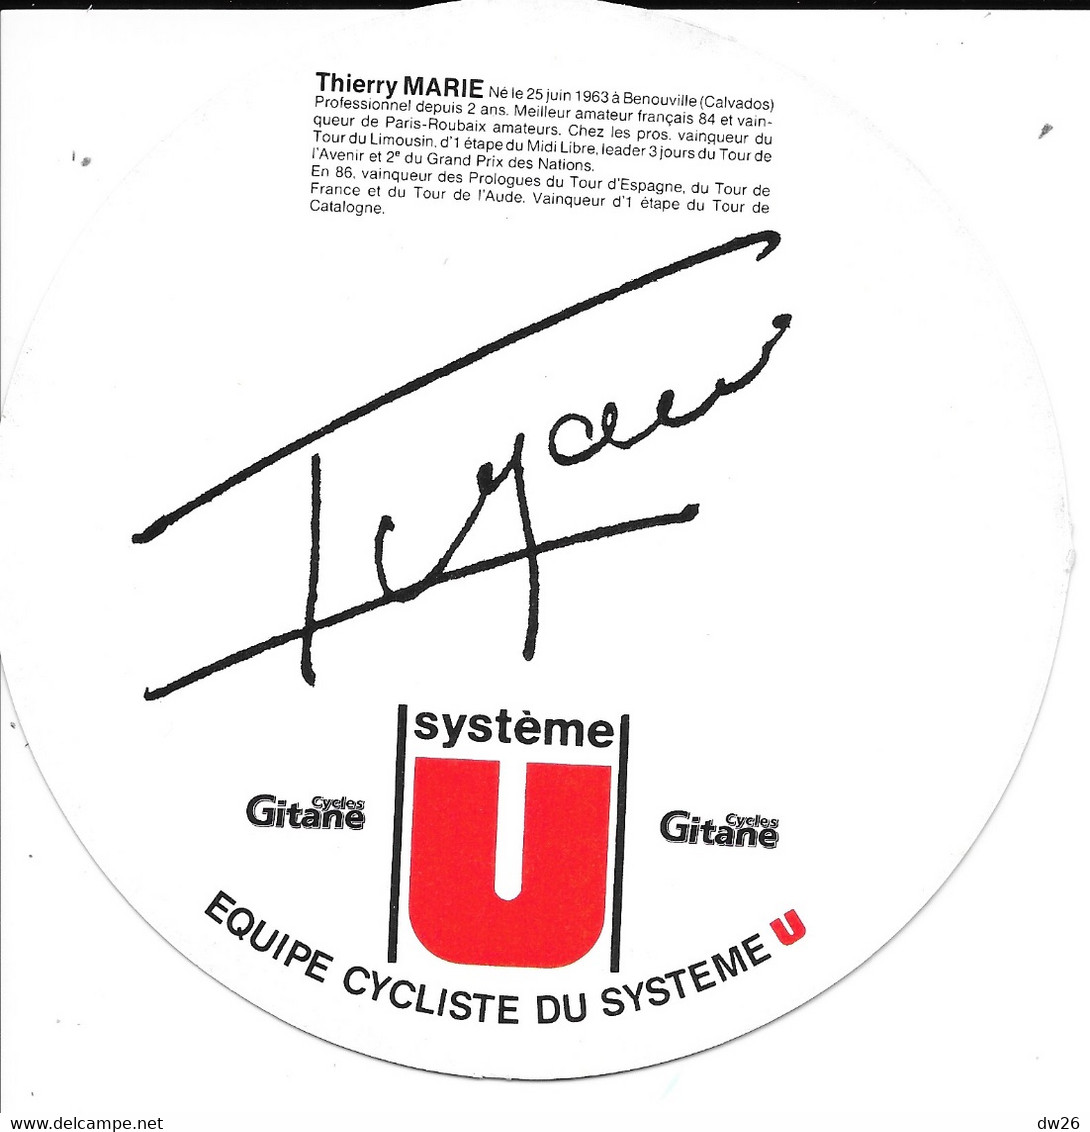 Collection Cyclisme Professionnel - Equipe Système U Saison 1987 Avec 18 Fiches Coureurs: Fignon, Madiot, Vallet, Gayant - Radsport